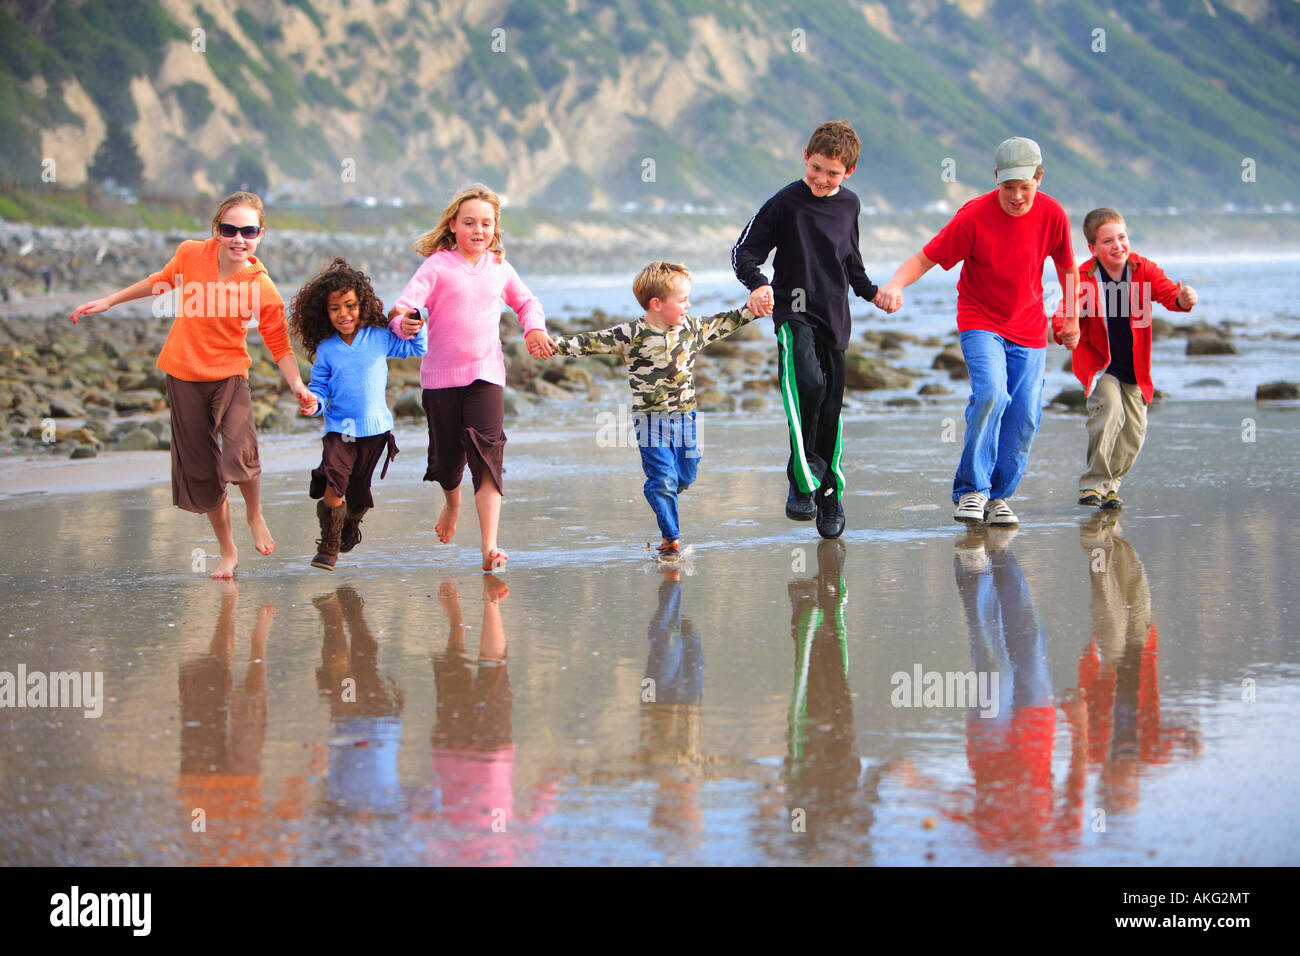 Les enfants courent sur les bancs de moules de plage Carpenteria Comté de Santa Barbara California United States (MR) Banque D'Images